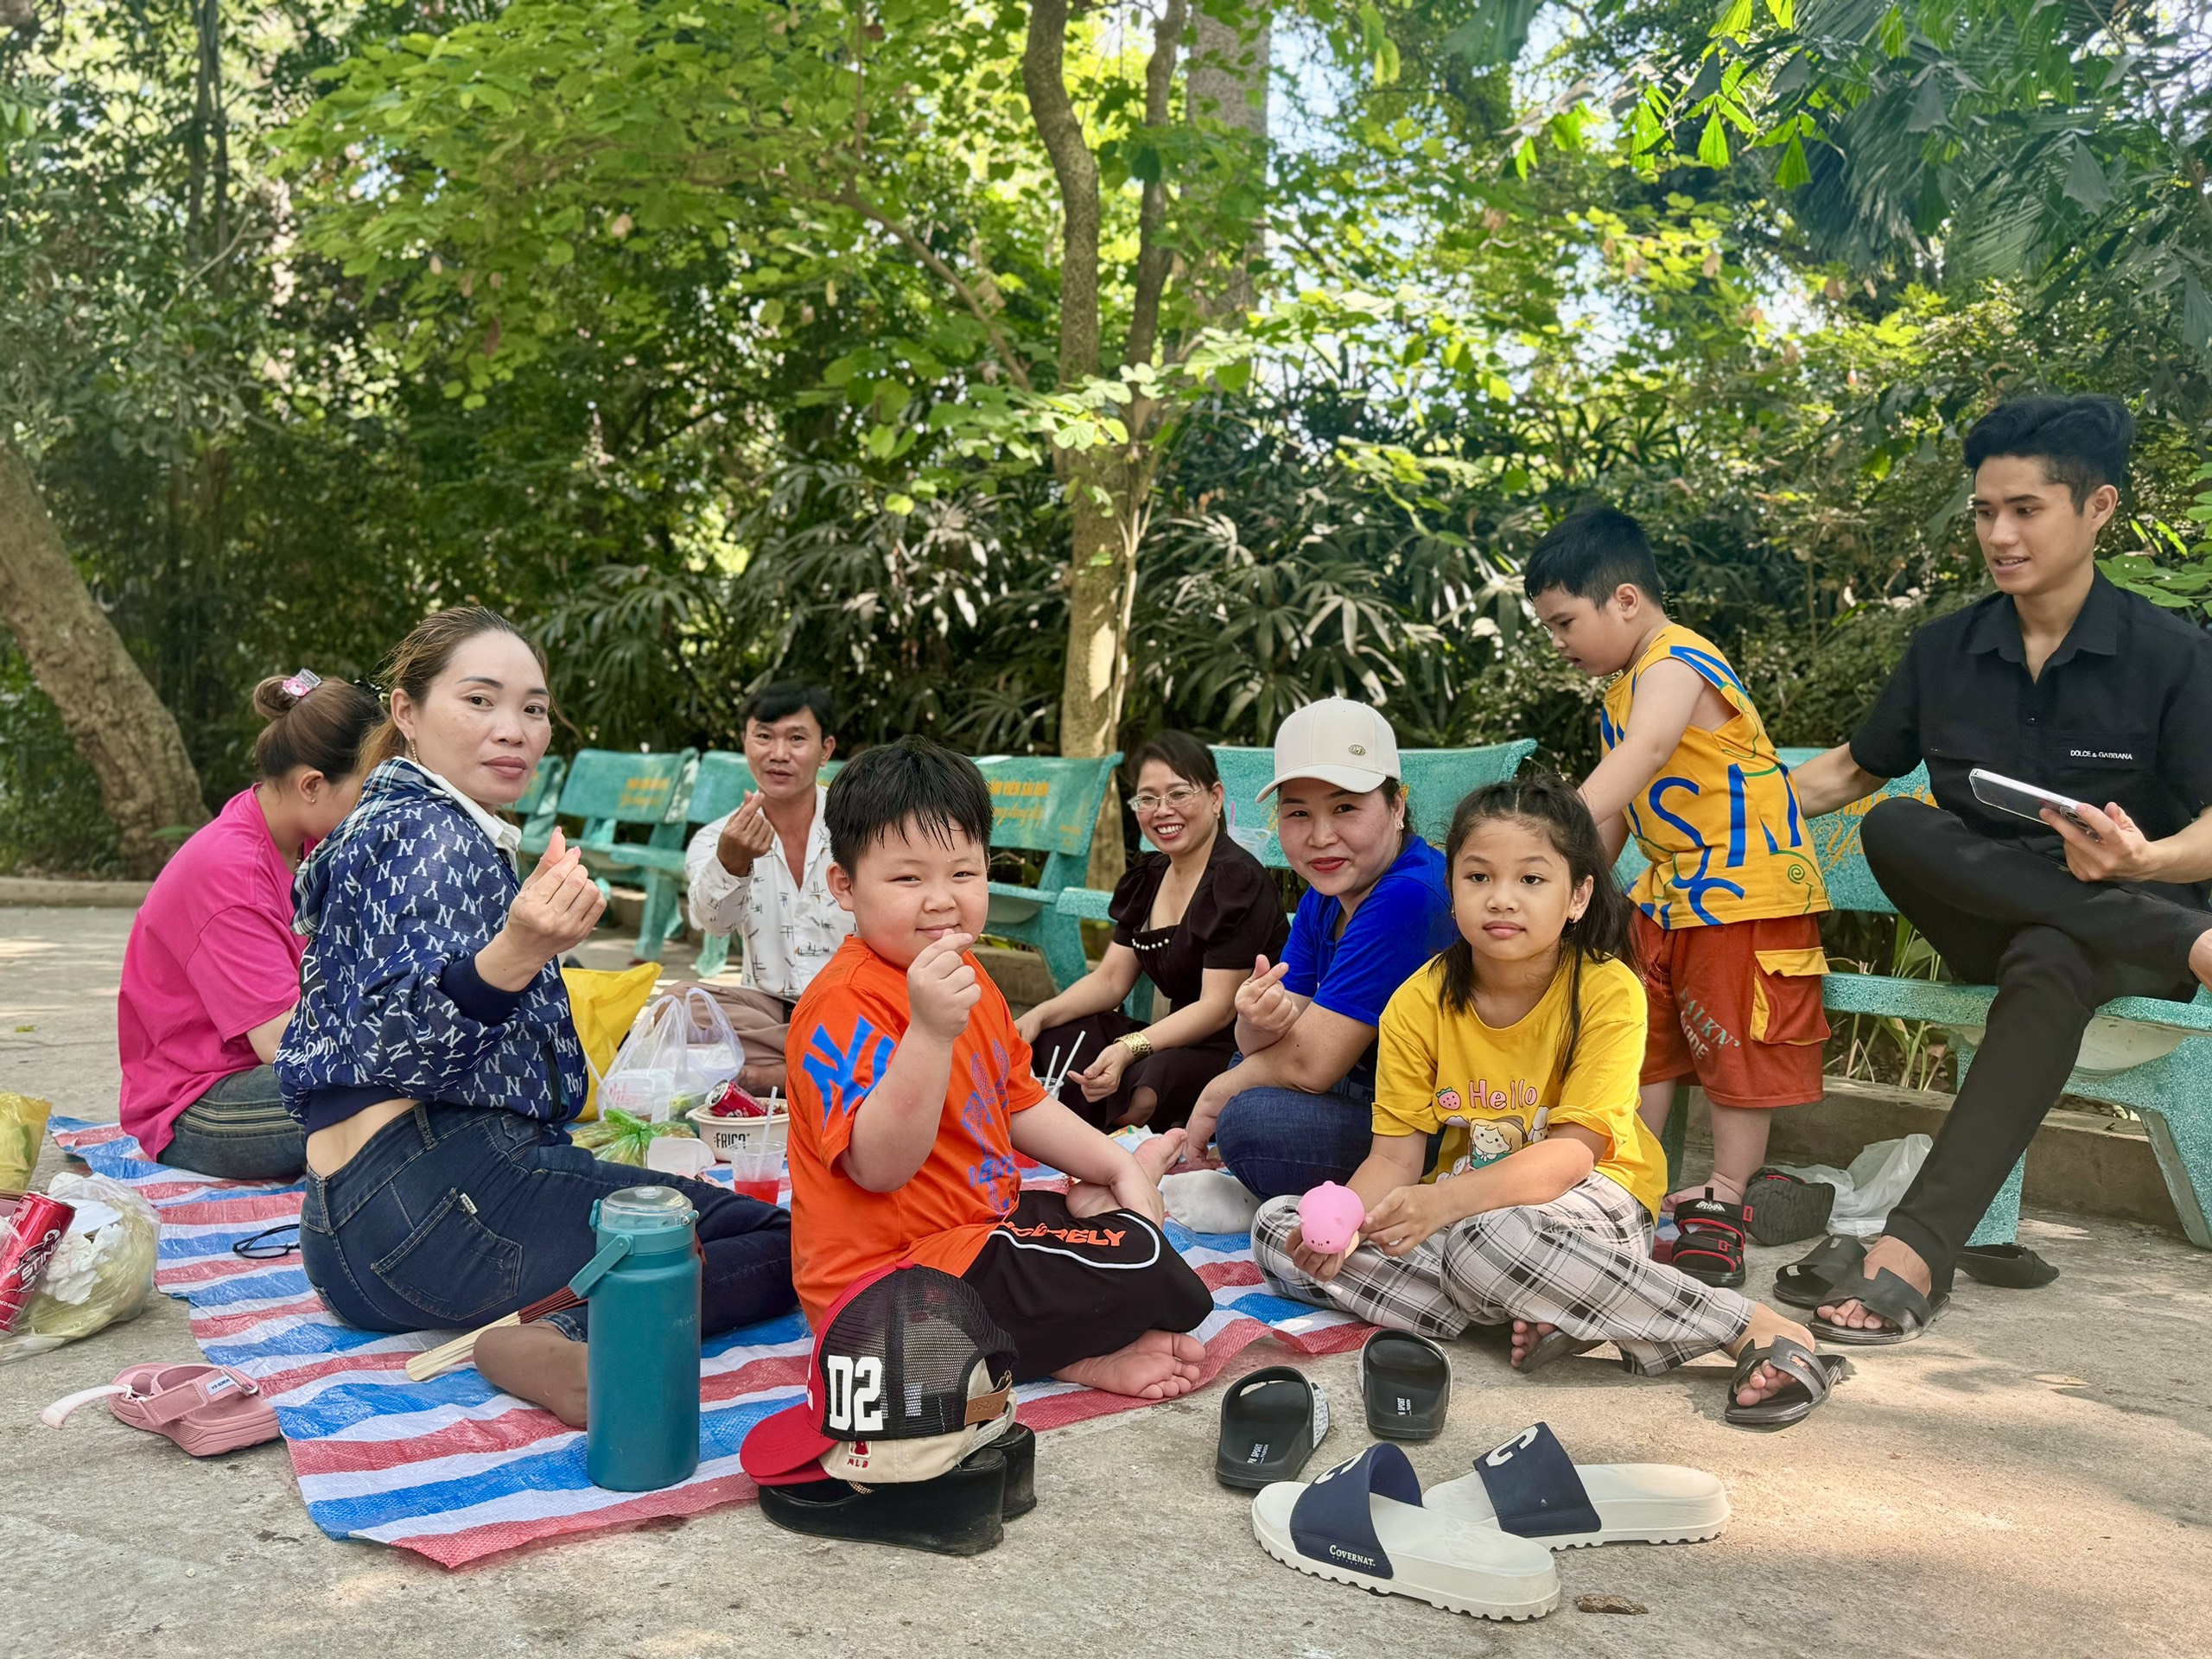 Từ 7 giờ, gia đình ông Hoàng Văn Quang (47 tuổi) và những người hàng xóm đã đi từ H.Bình Chánh lên Thảo Cầm Viên để vui chơi. Những ngày này, TP.HCM nắng nóng gay gắt nên đây là lựa chọn được mọi người đặt lên hàng đầu